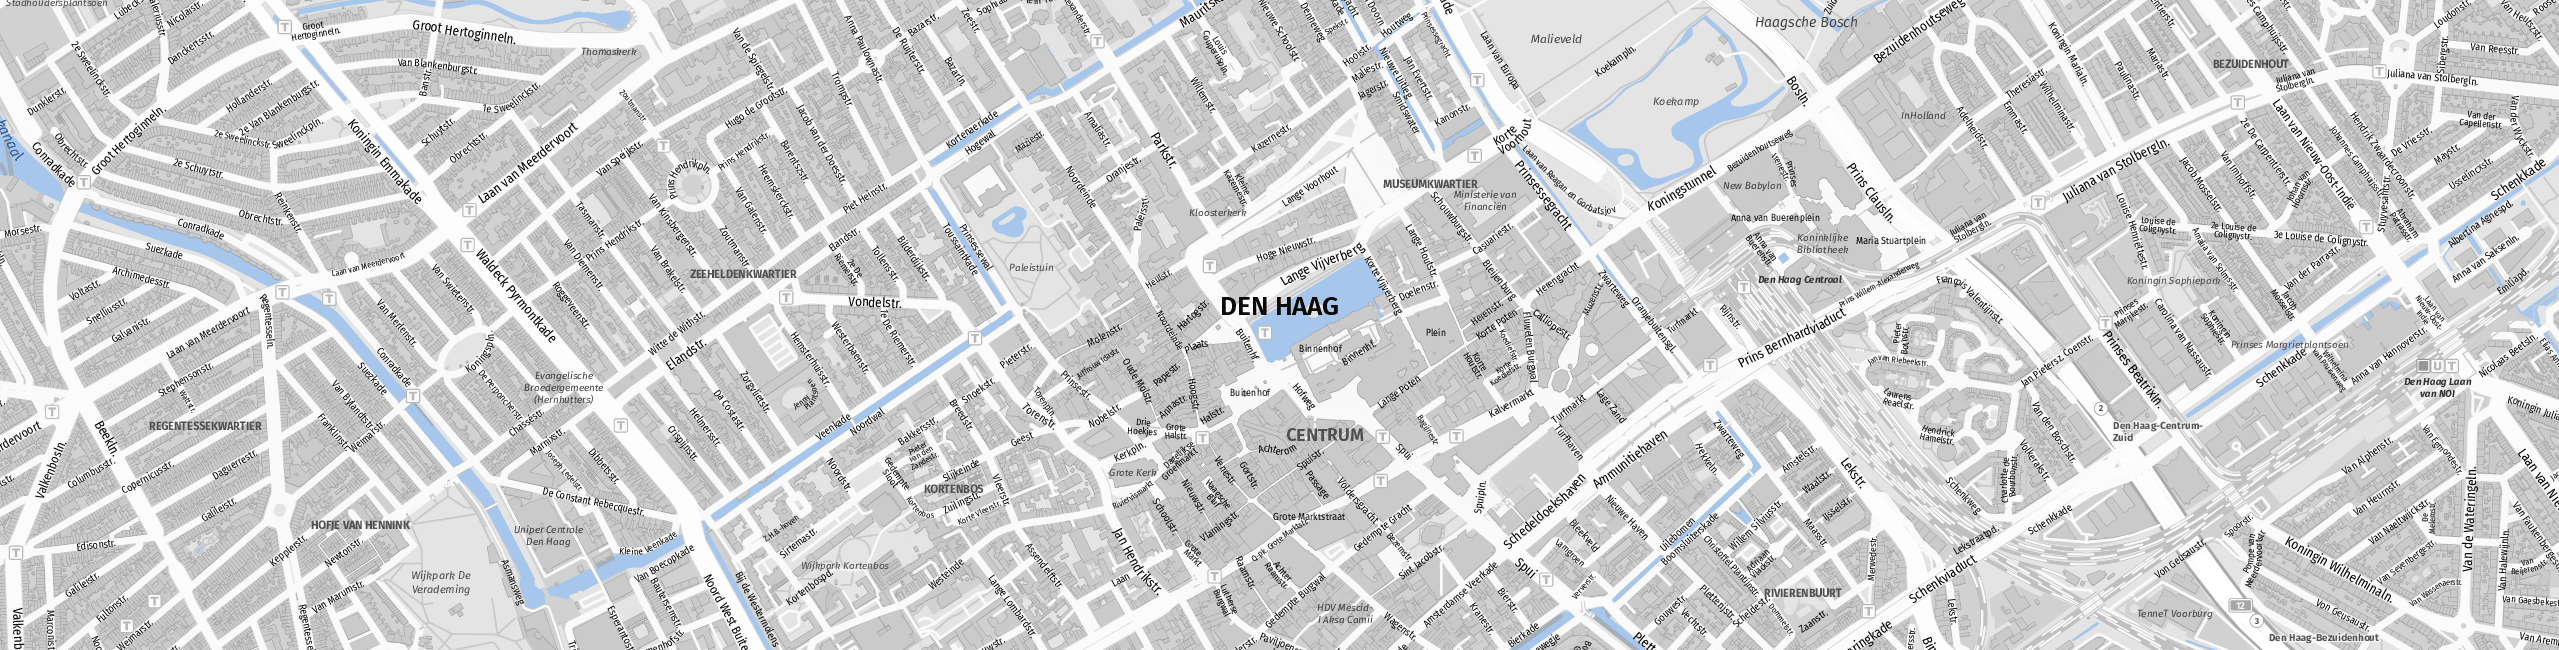 Stadtplan The Hague zum Downloaden.